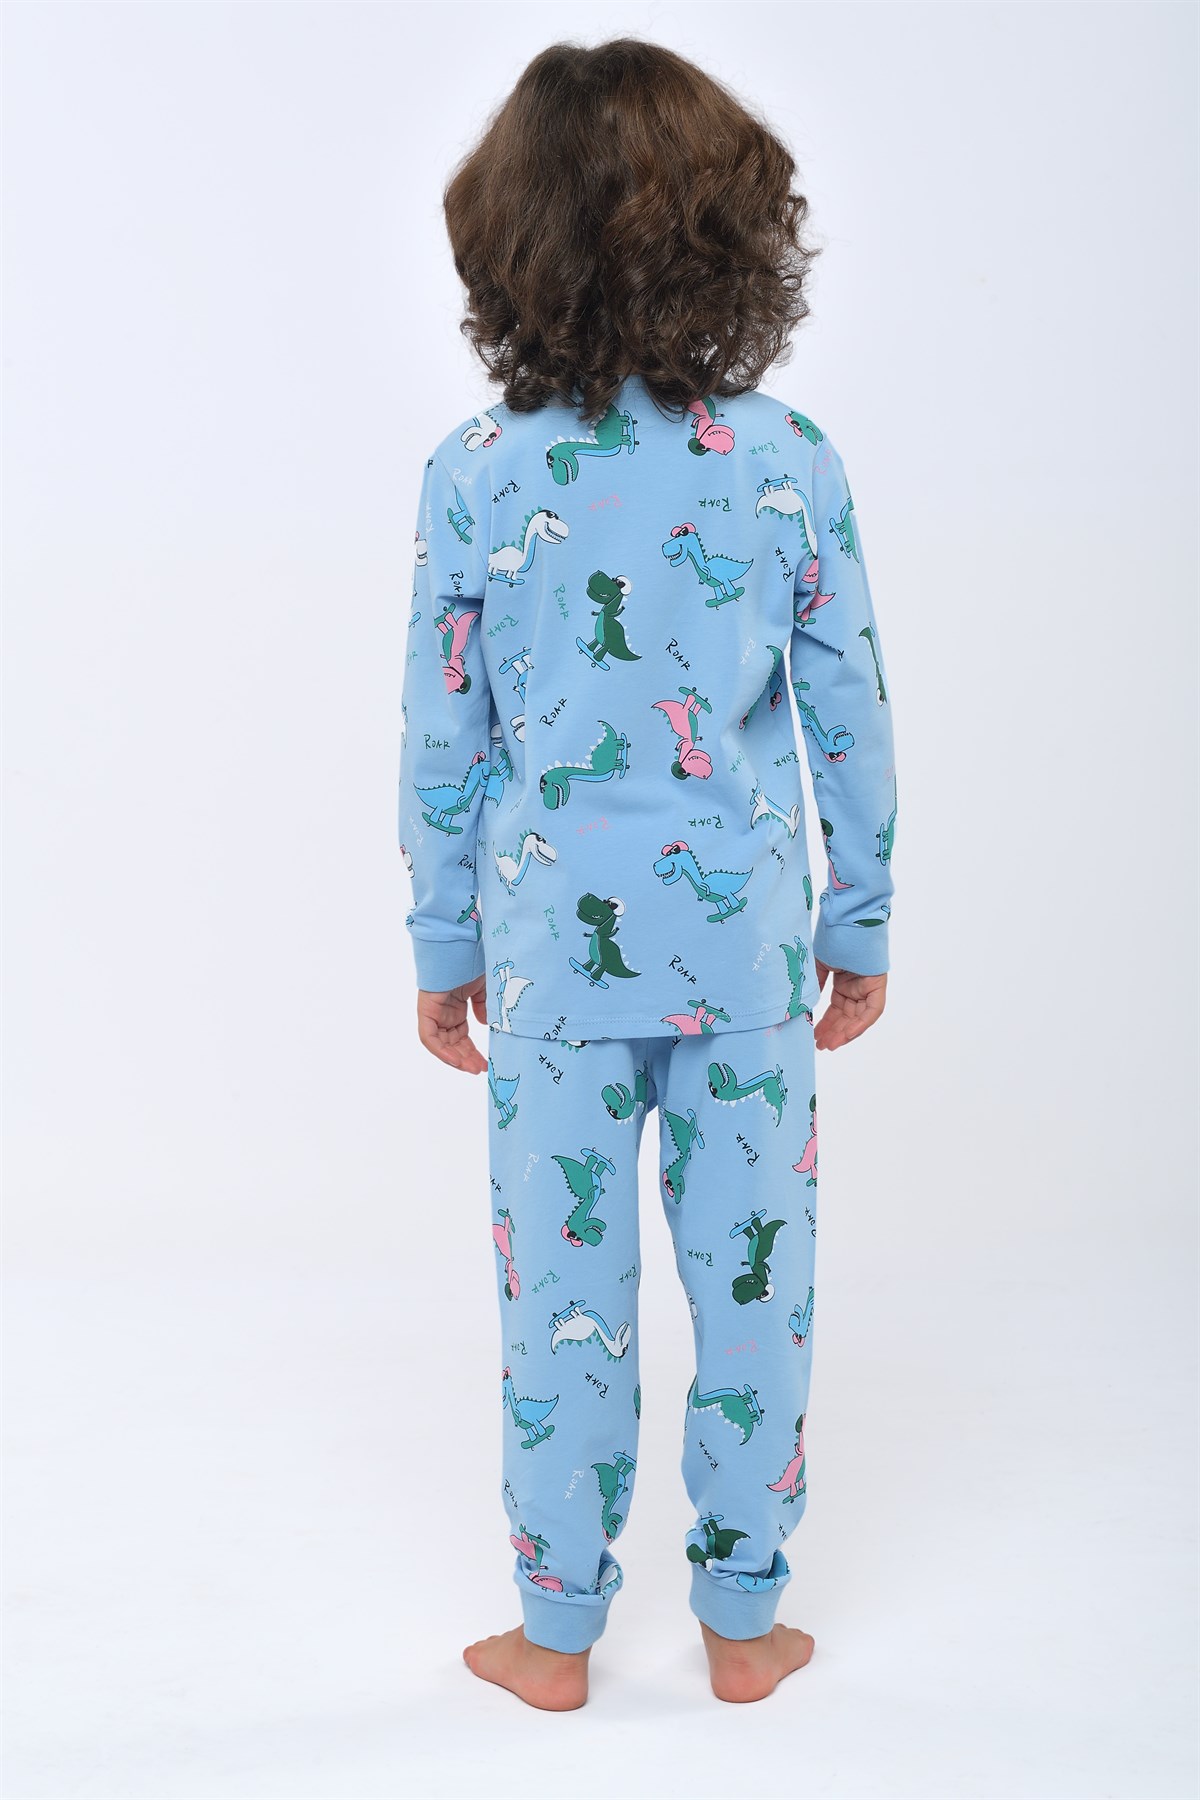 Dino Erkek Çocuk Pijama Takımı MAVİ